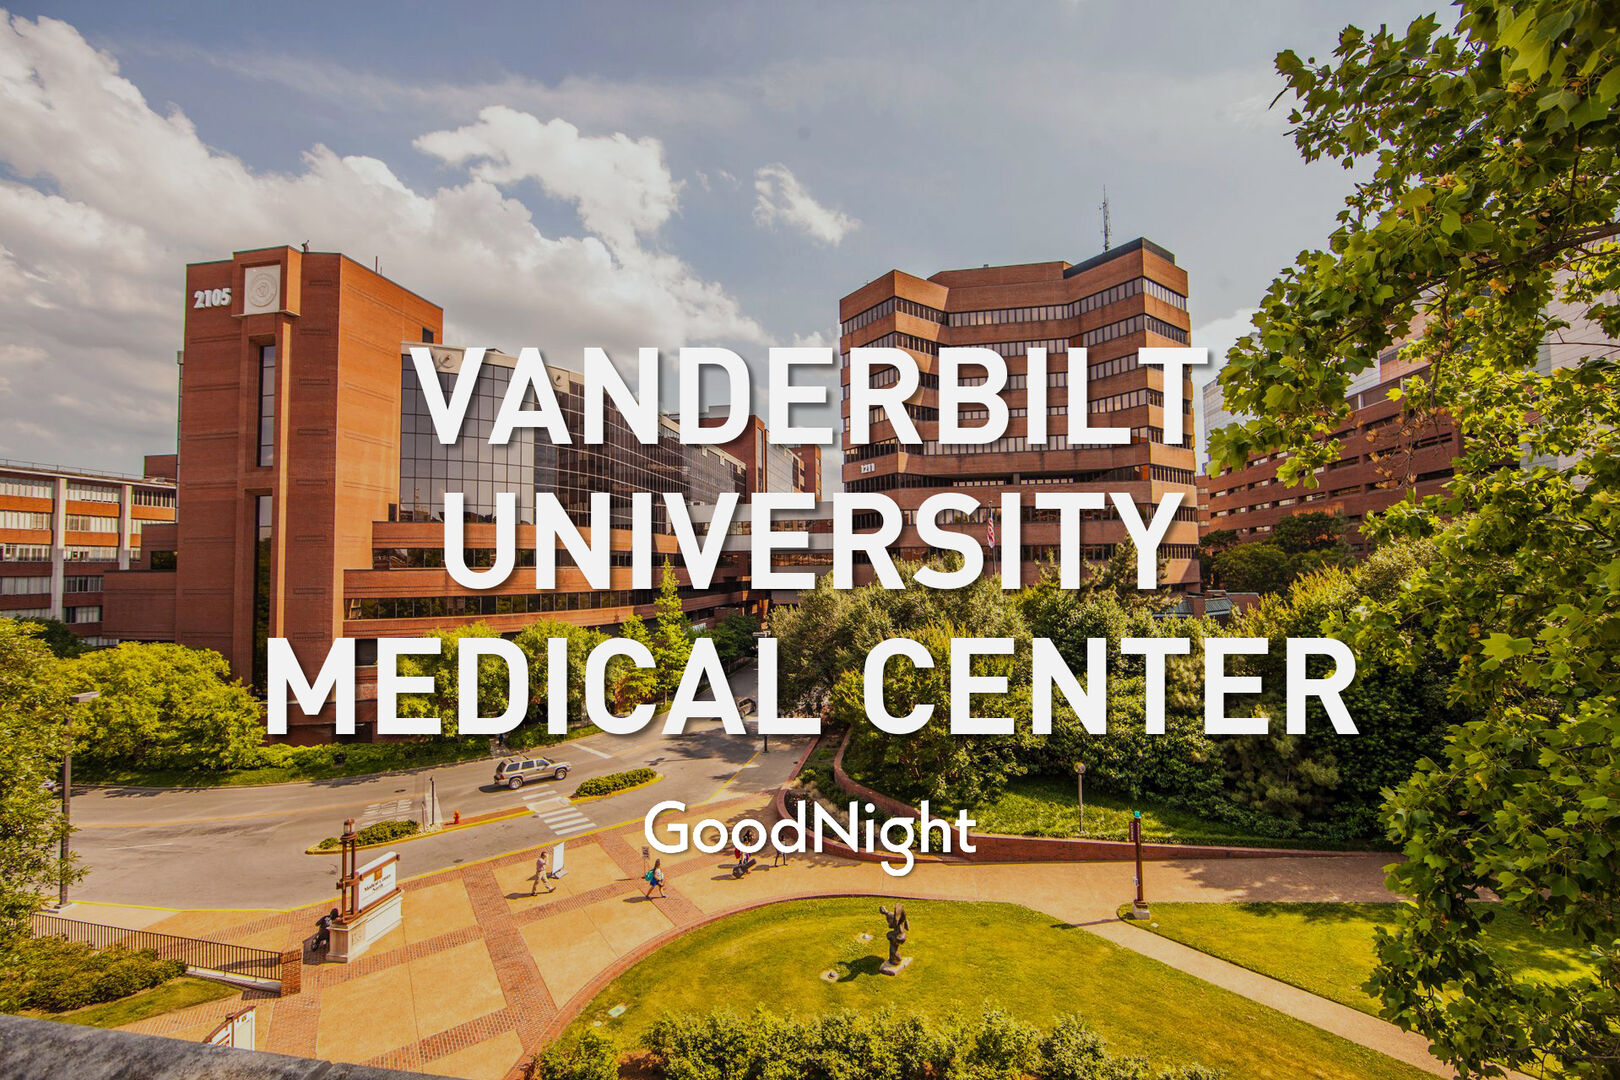 6 mins: Vanderbilt University Medical Center